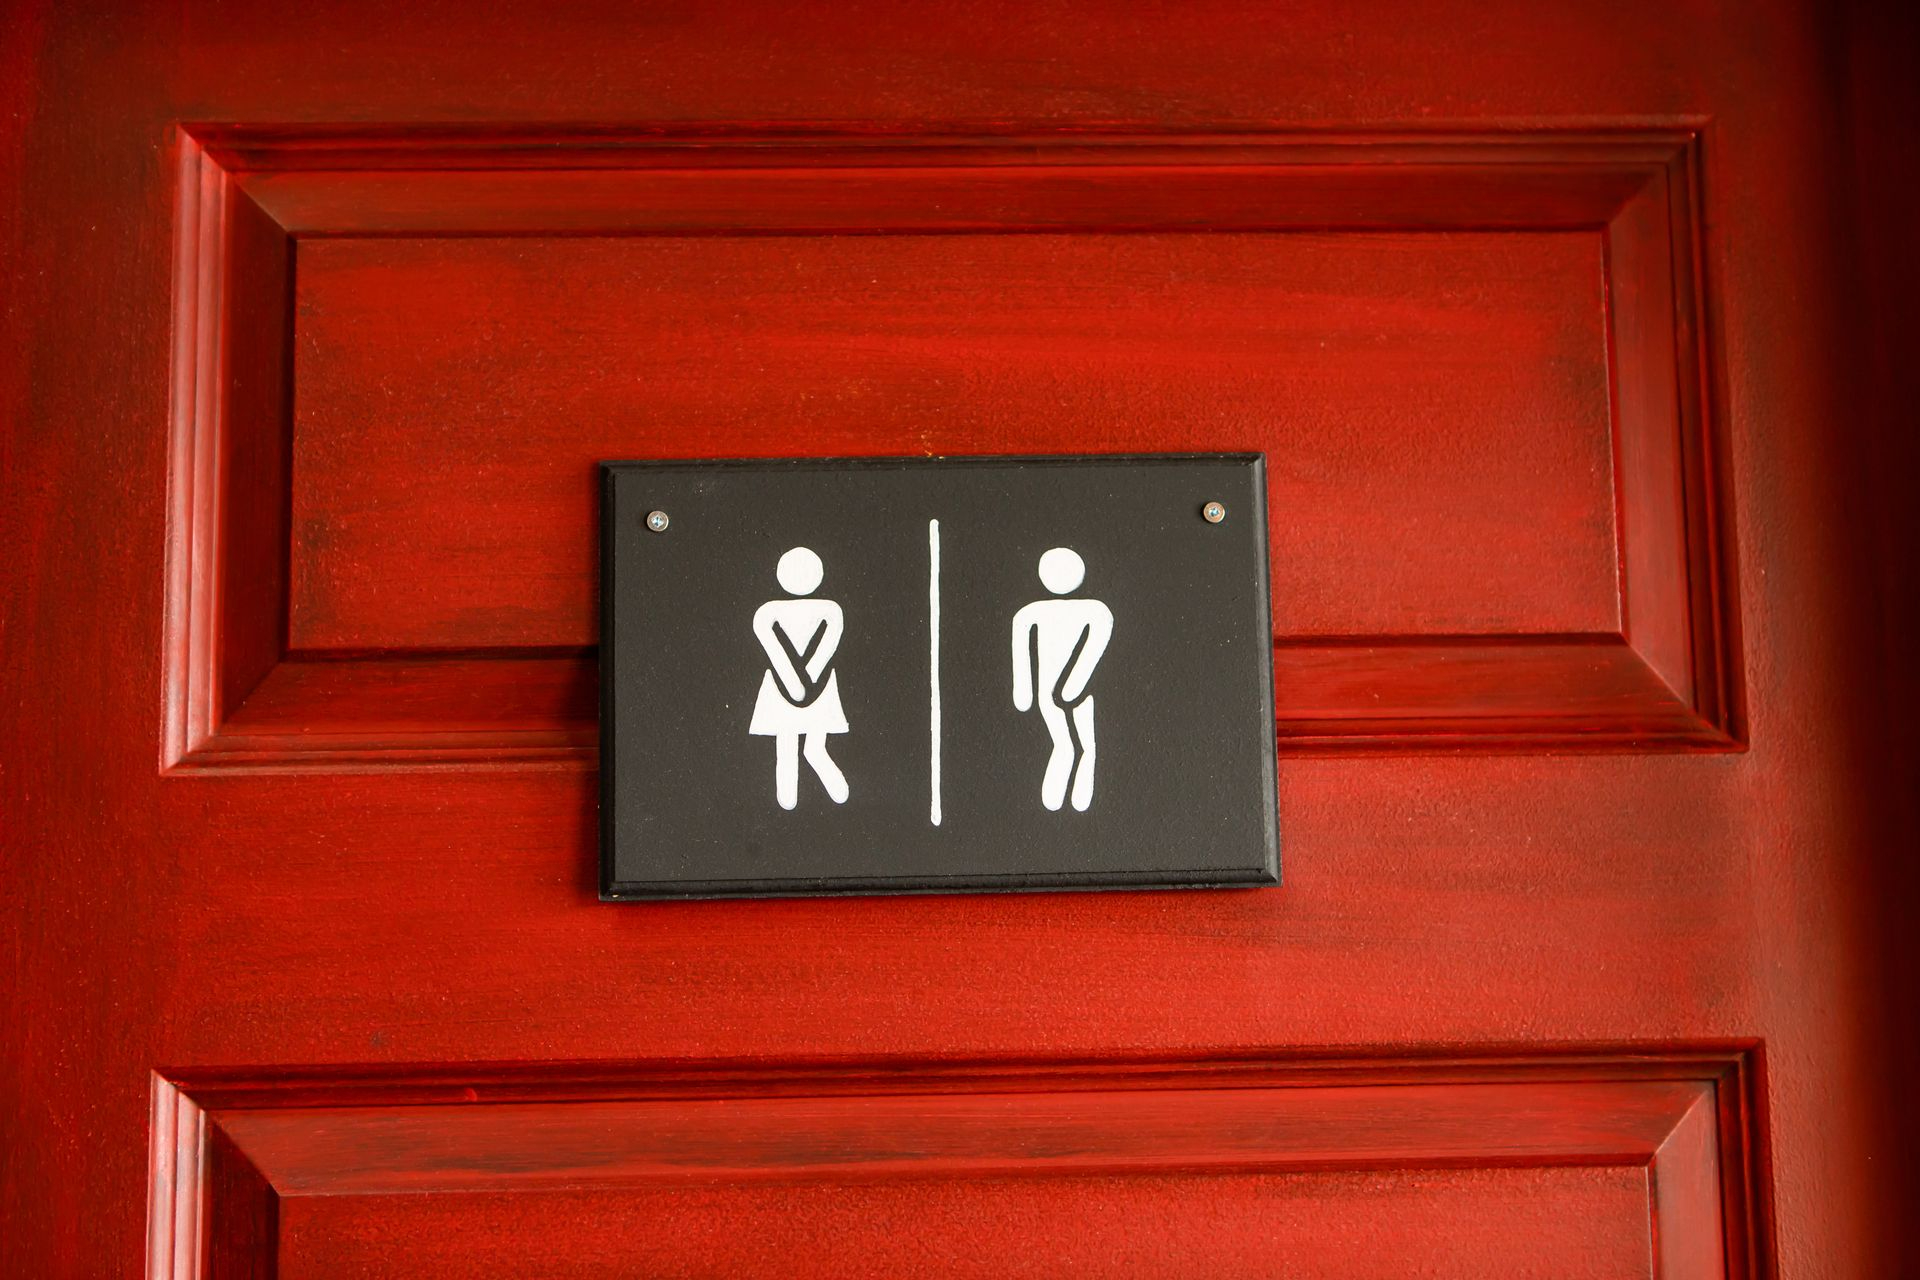 Icones toilettes femmes et hommes